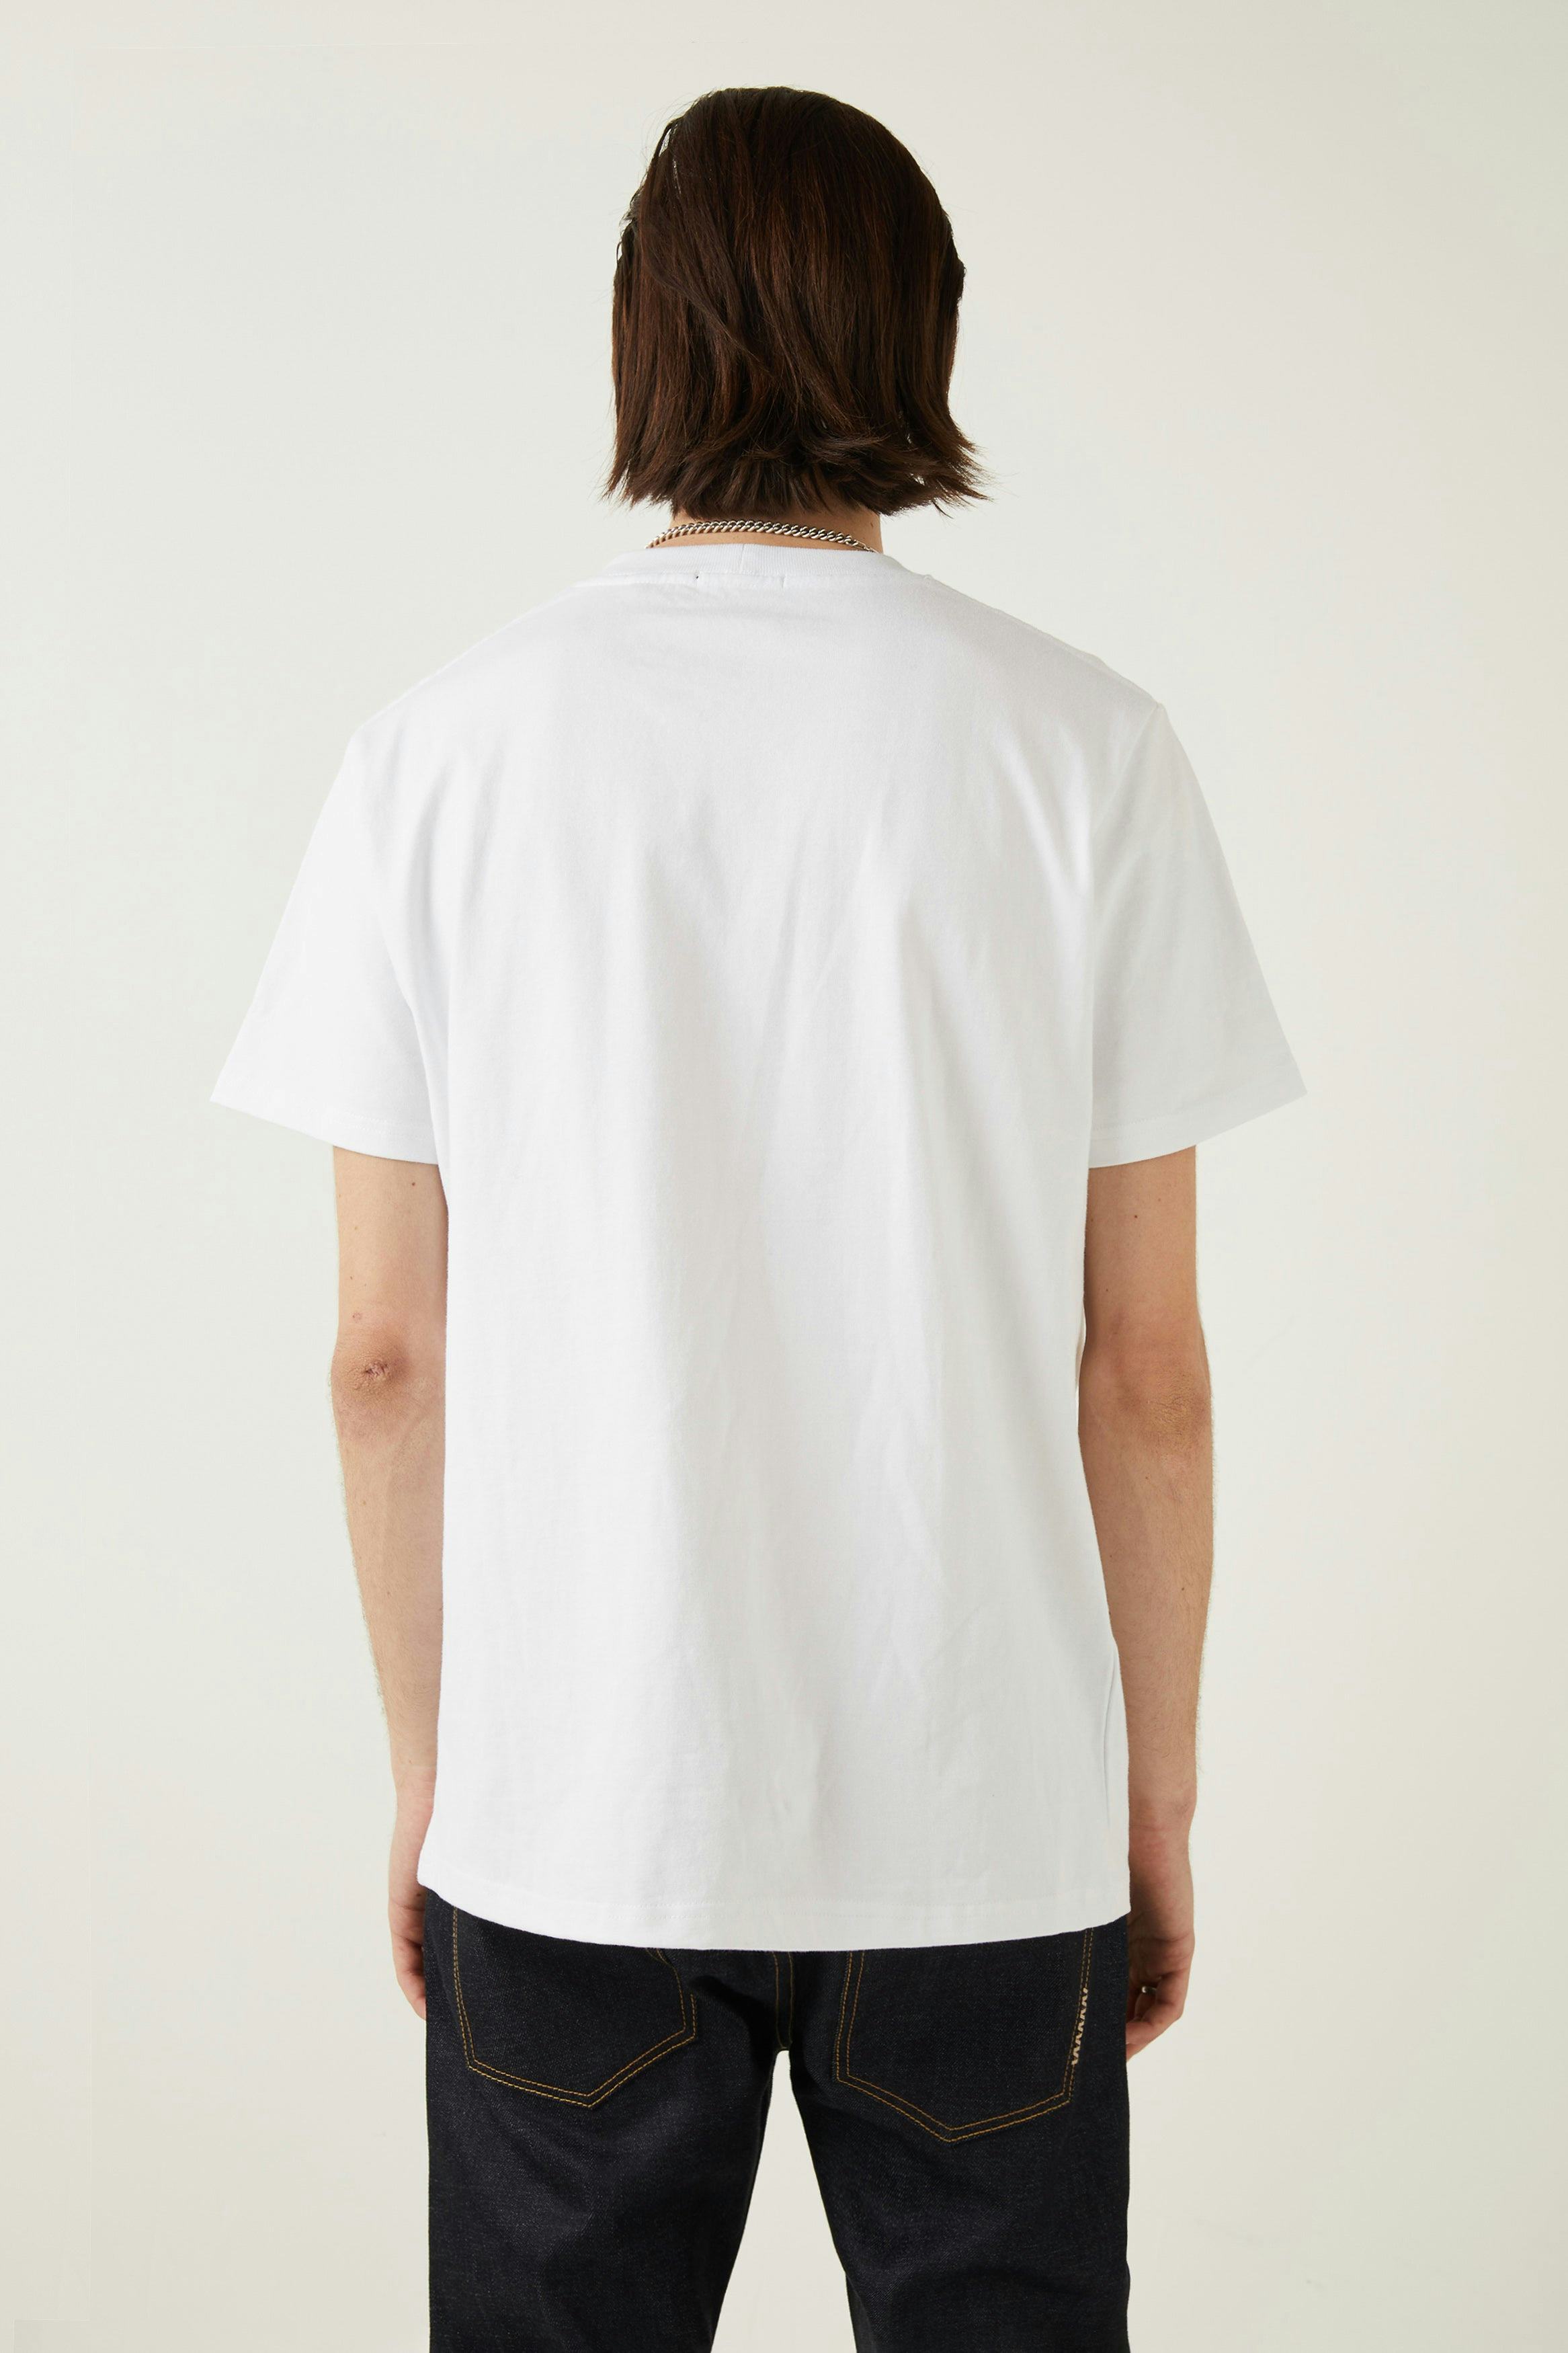 Neuw Premium Tee - White Neuw oversized white mens-t-shirt 